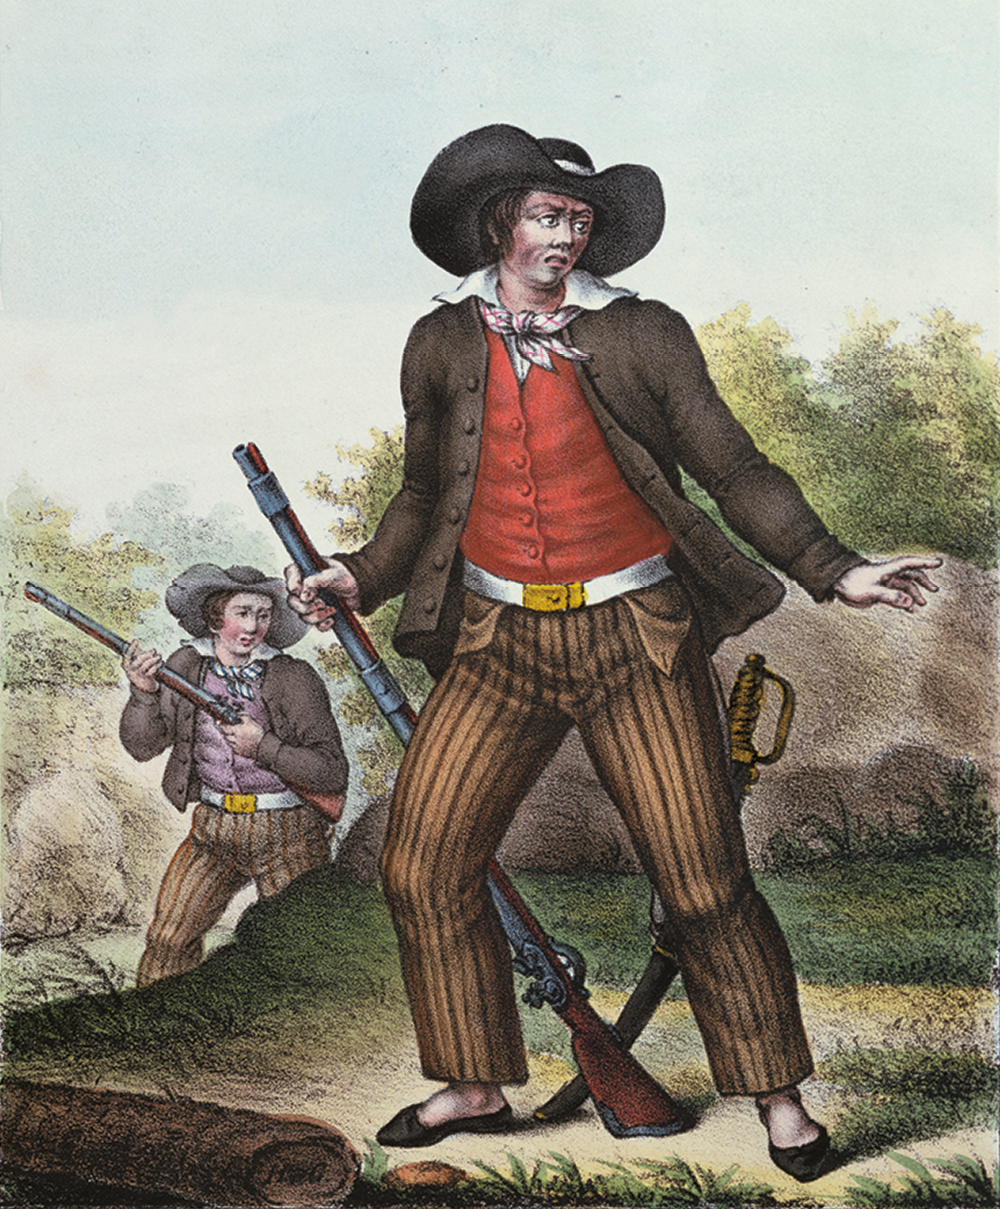 Litogravura. Um homem, usando chapéu, camisa, colete, casaco e calça, está de pé olhando para a direita e segurando com as mãos uma arma. Ao fundo, outro homem com roupas parecidas e segurando uma arma.